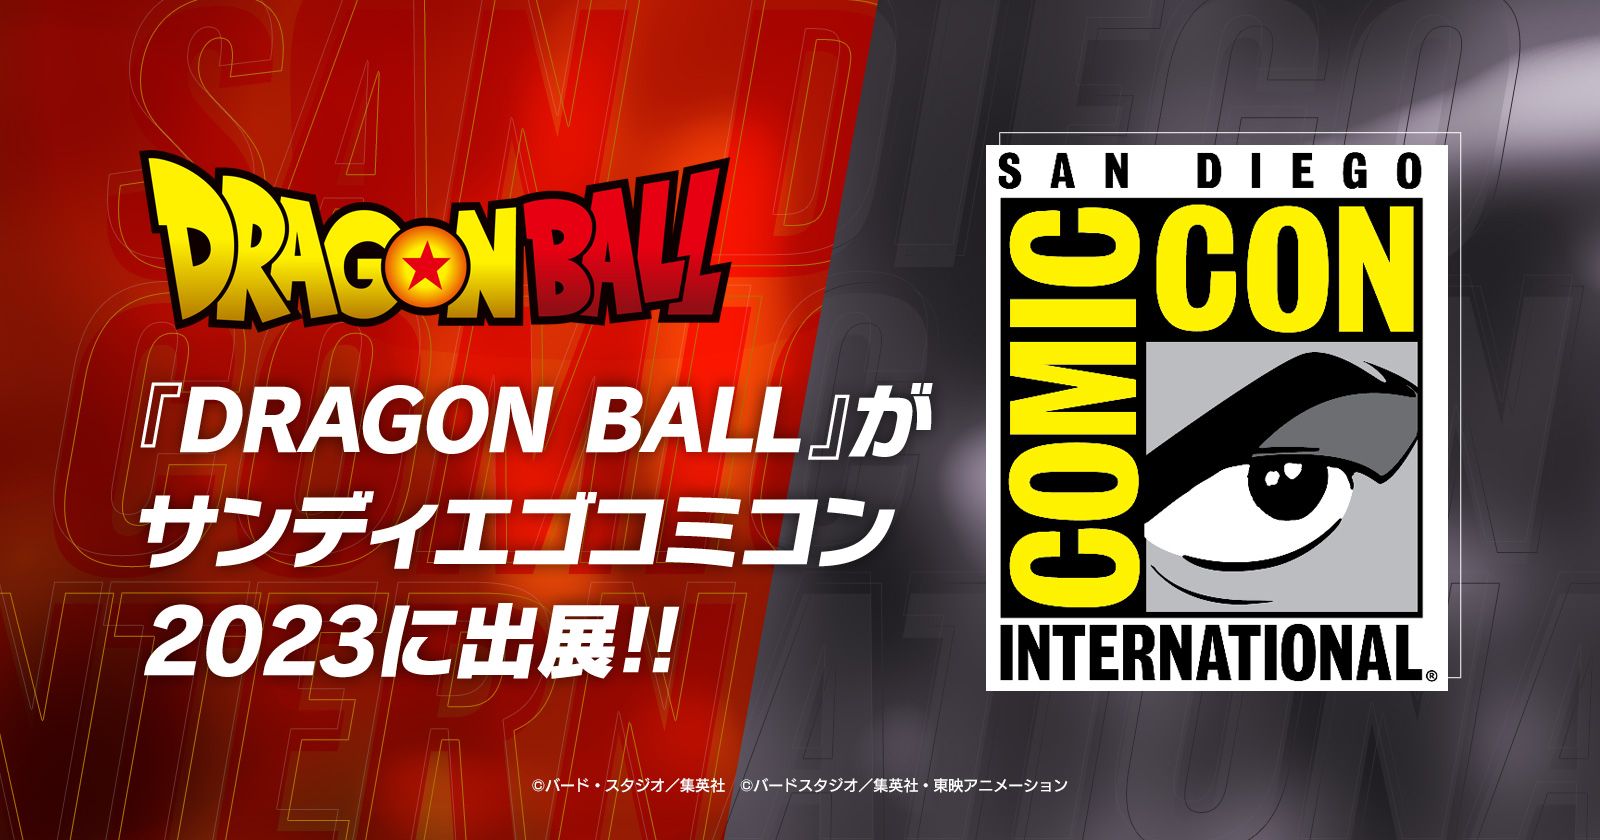 『DRAGON BALL』がサンディエゴコミコン2023に出展!!